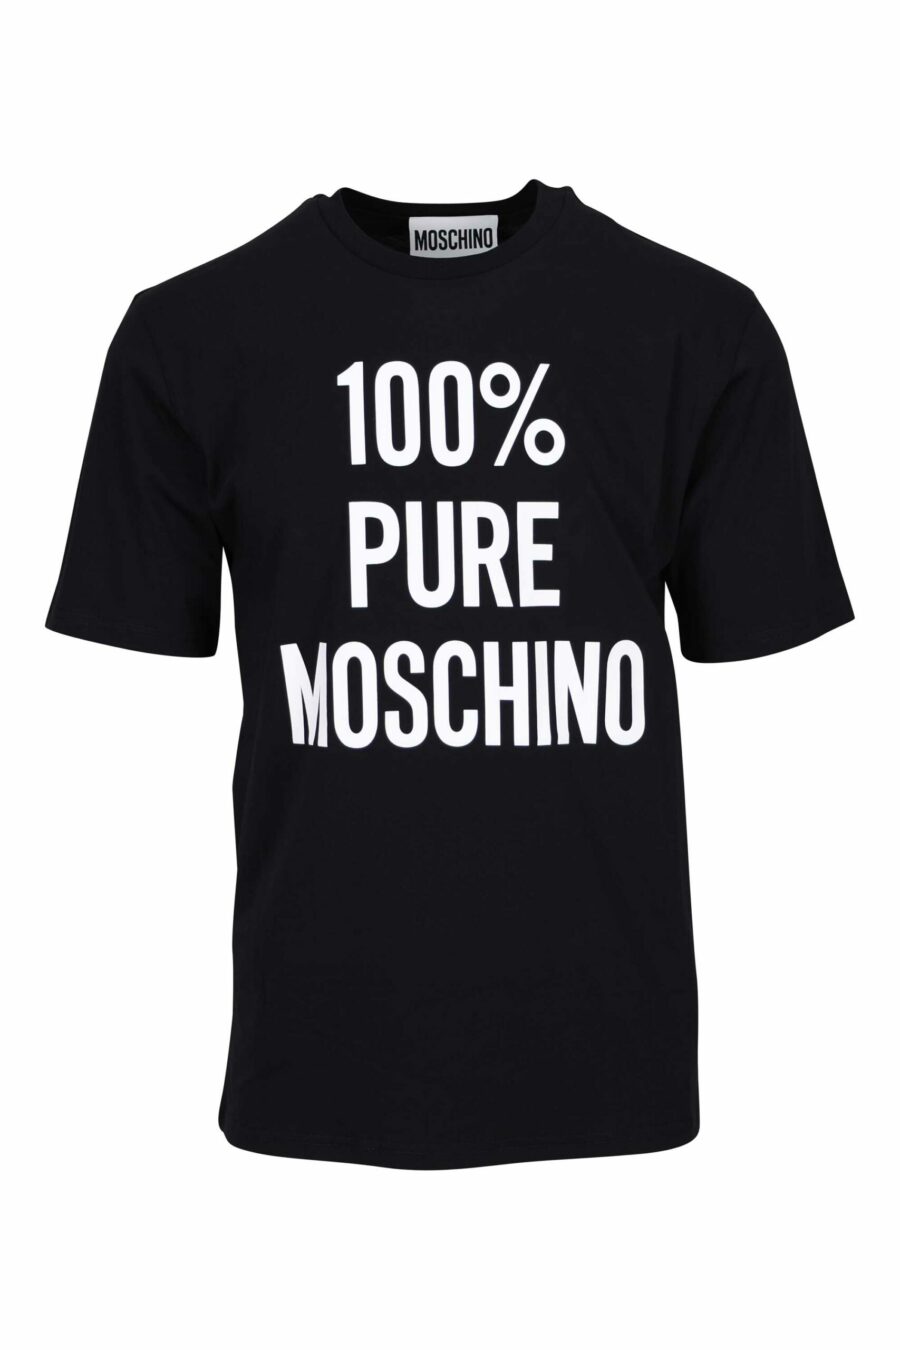 Schwarzes Bio-Baumwoll-T-Shirt "100% pure moschino" - 667113765150 skaliert